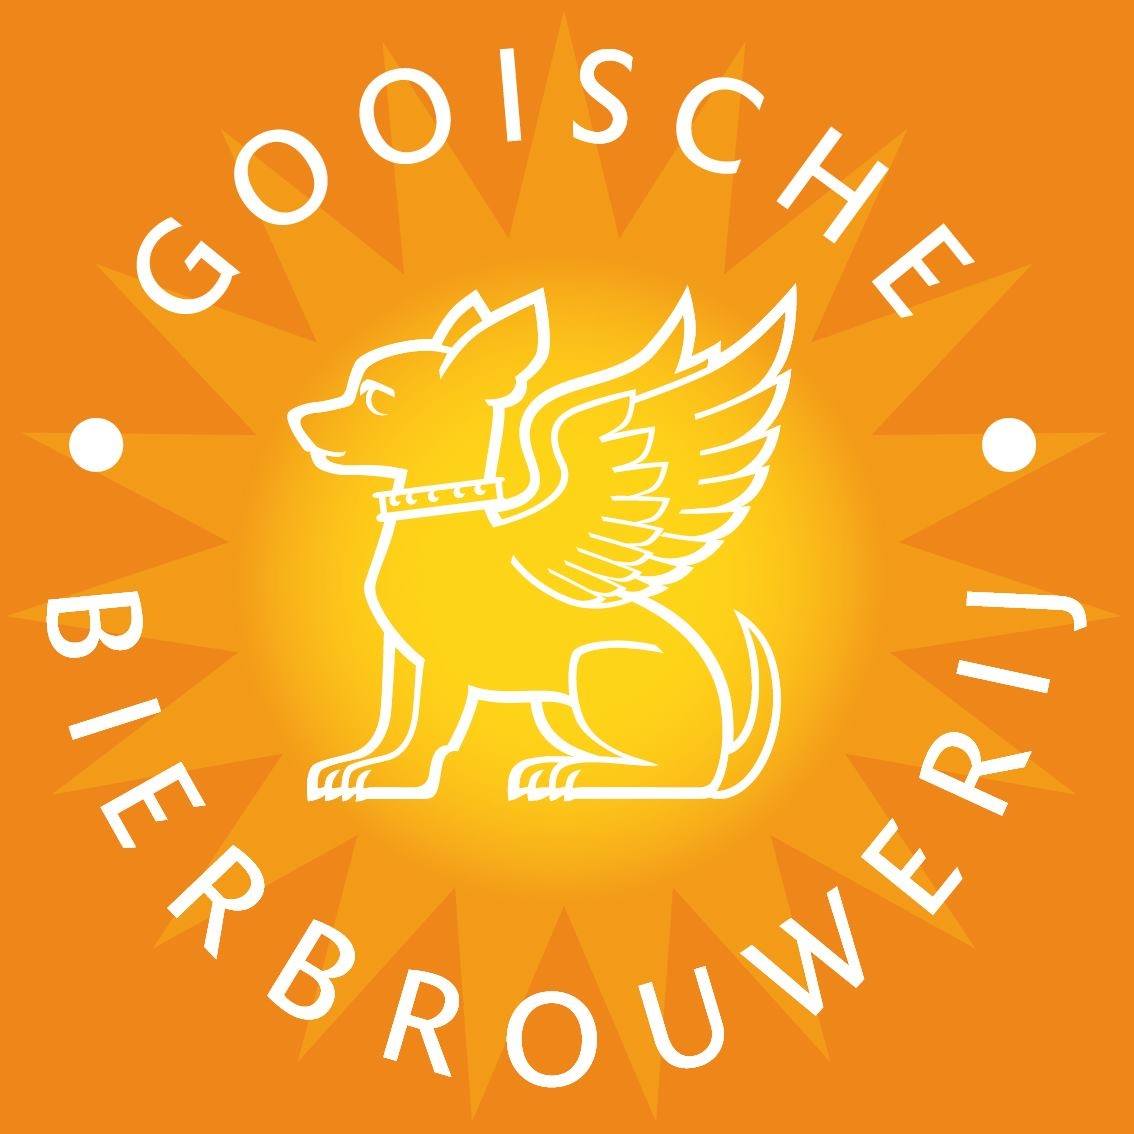 Gooische Bierbrouwerij in Foodhal Mout Hilversum Local Birds